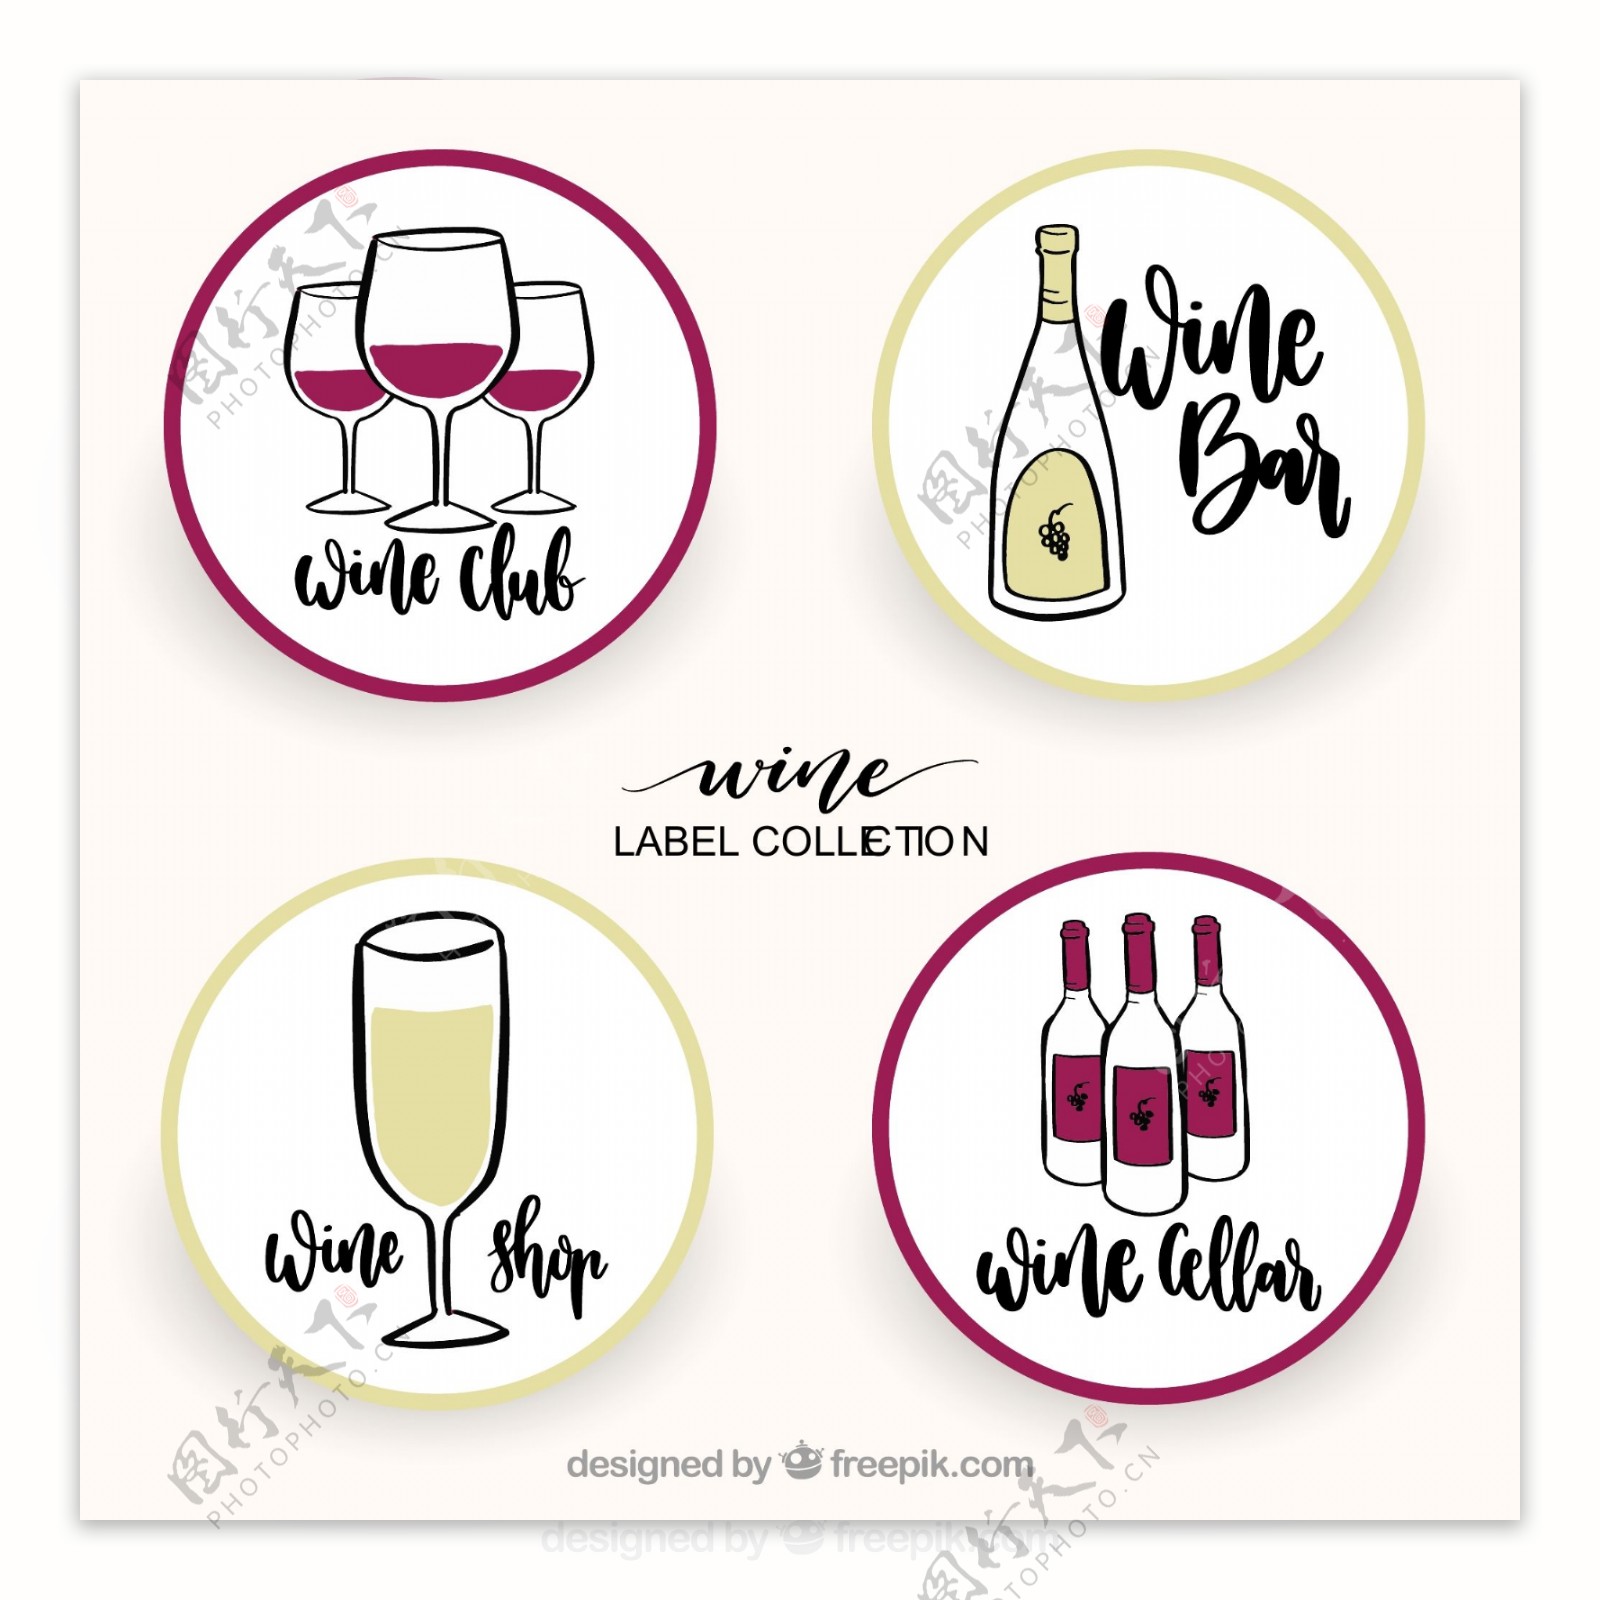 各种手绘风格圆形葡萄酒标签